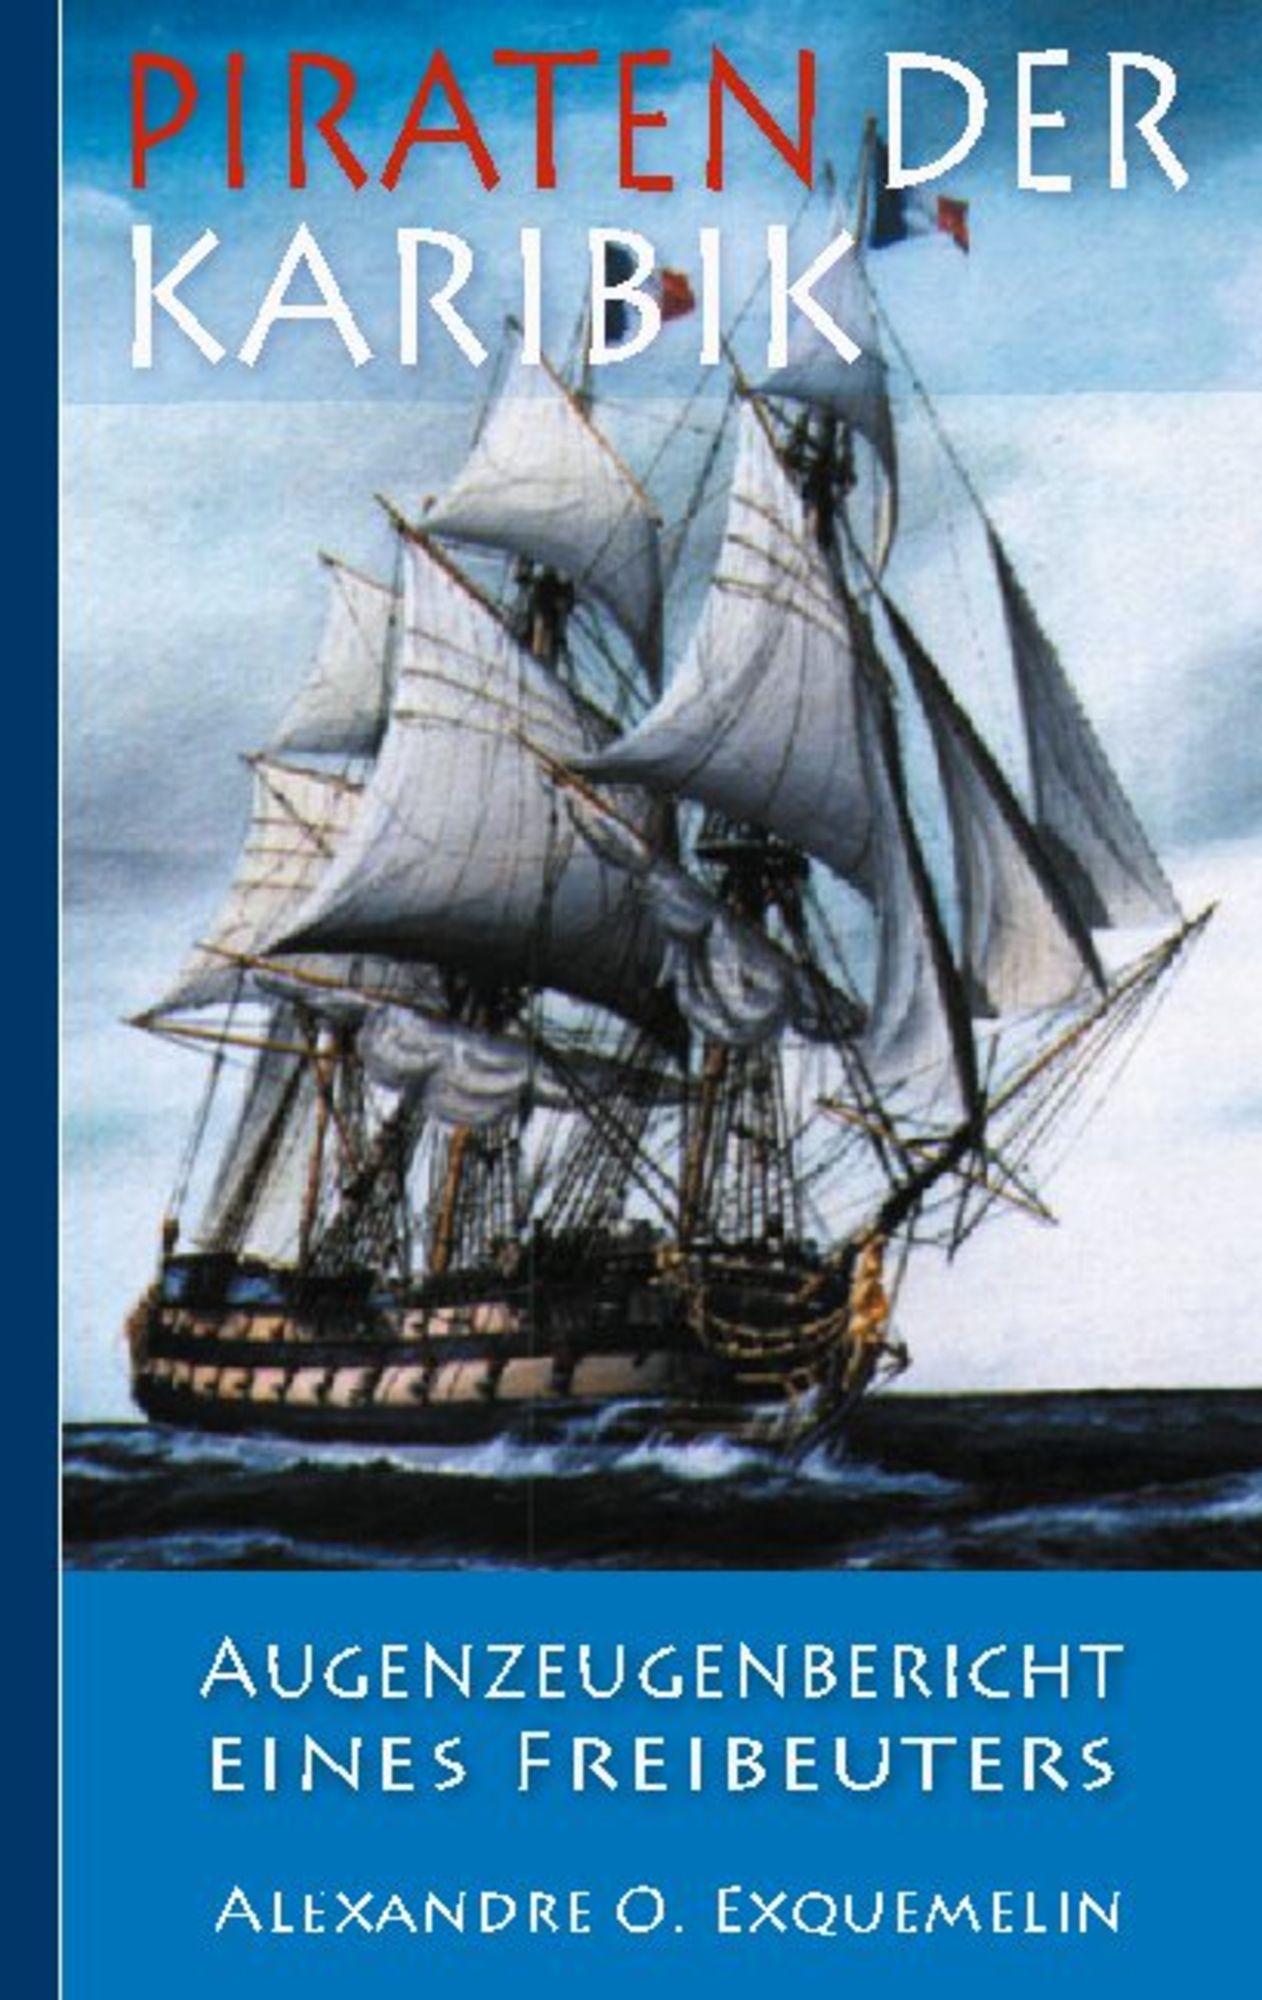 Piratenschiff PIRATES 13-teilig kaufen